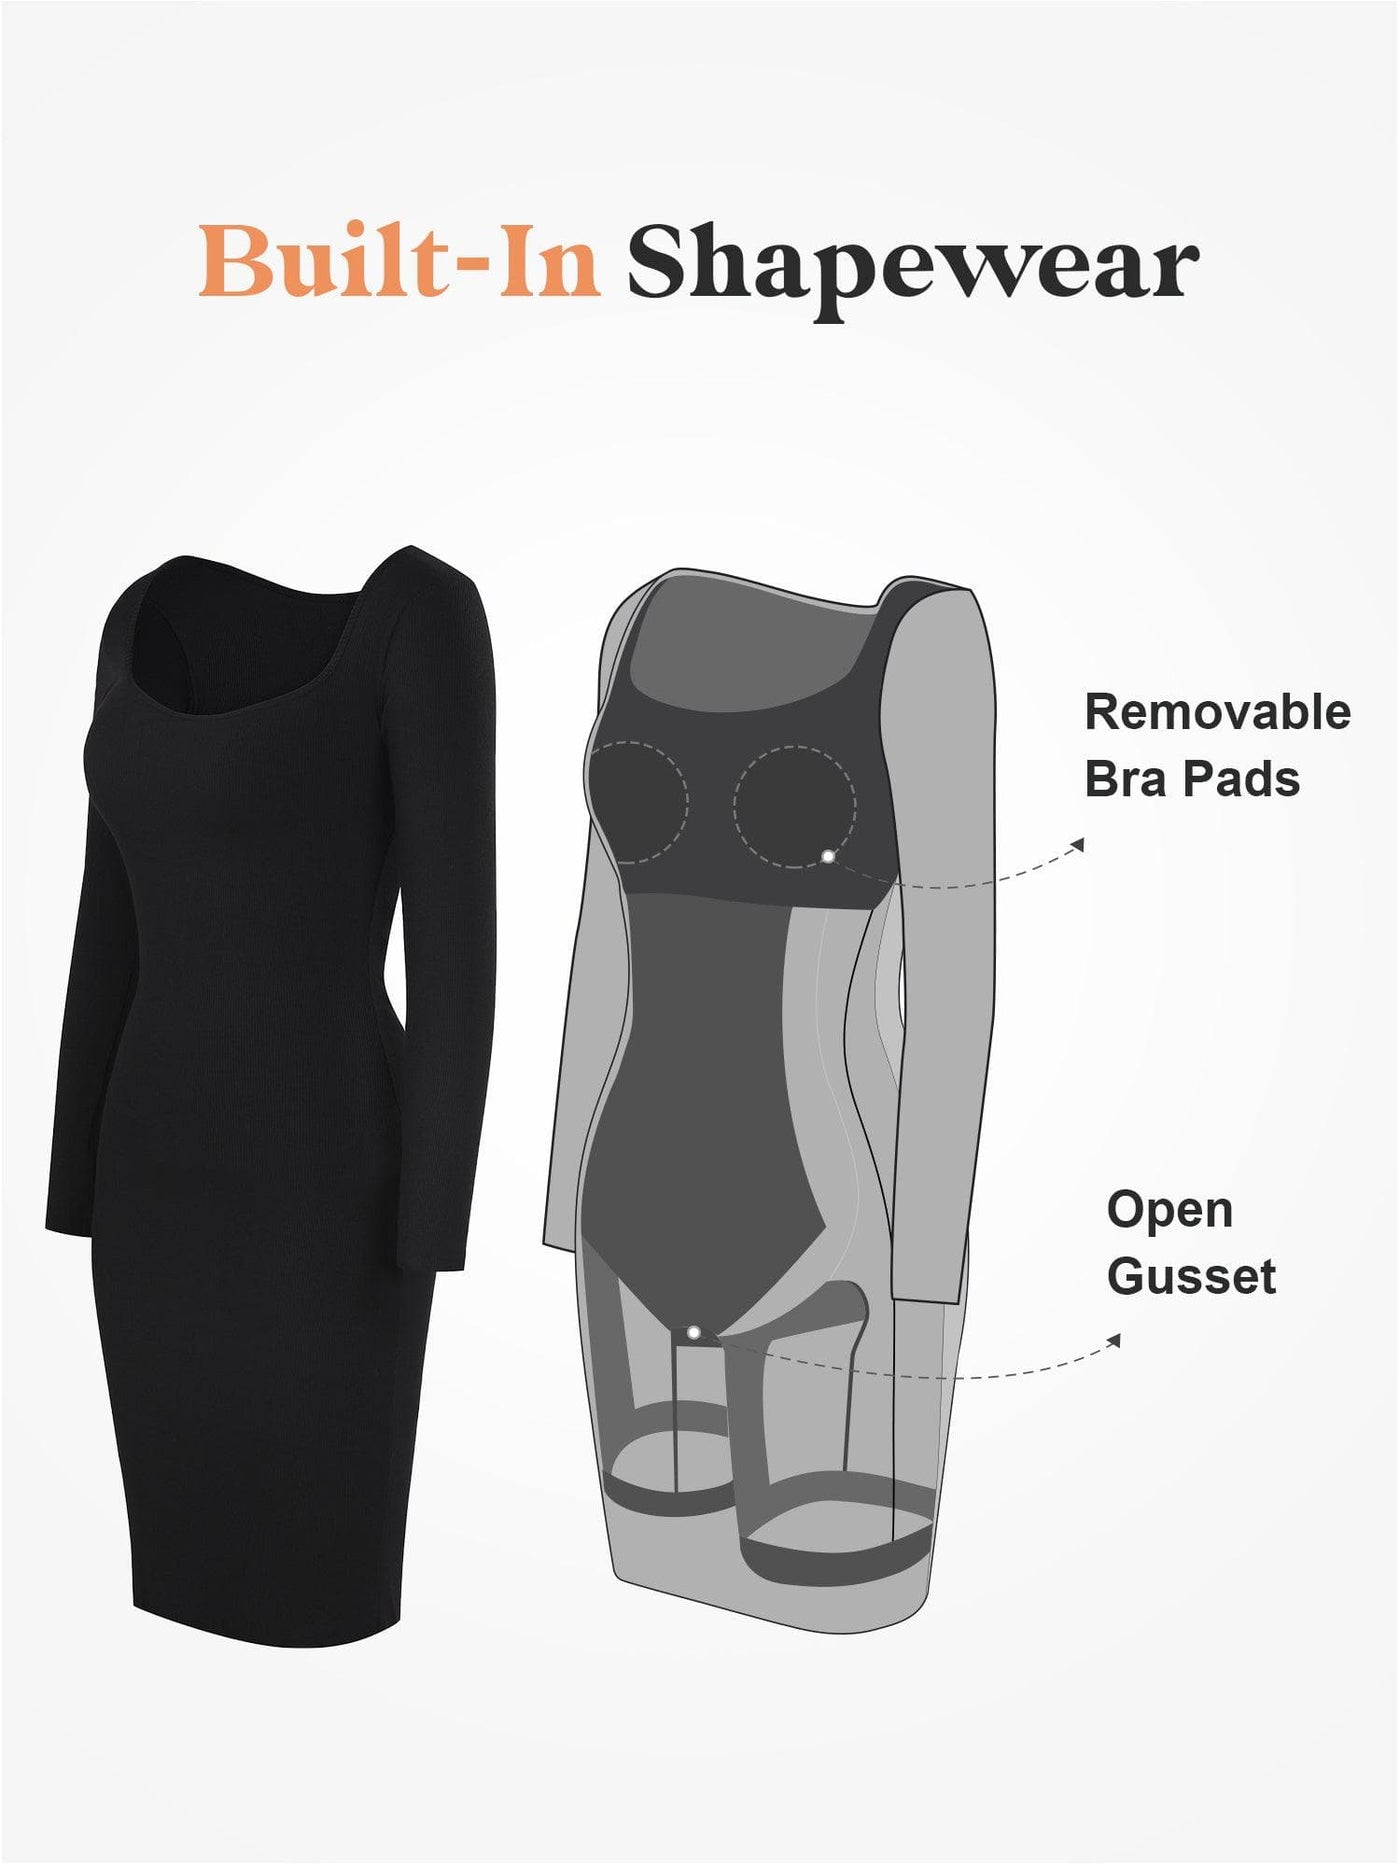 Built-In Shapewear Modal Lounge Dresses